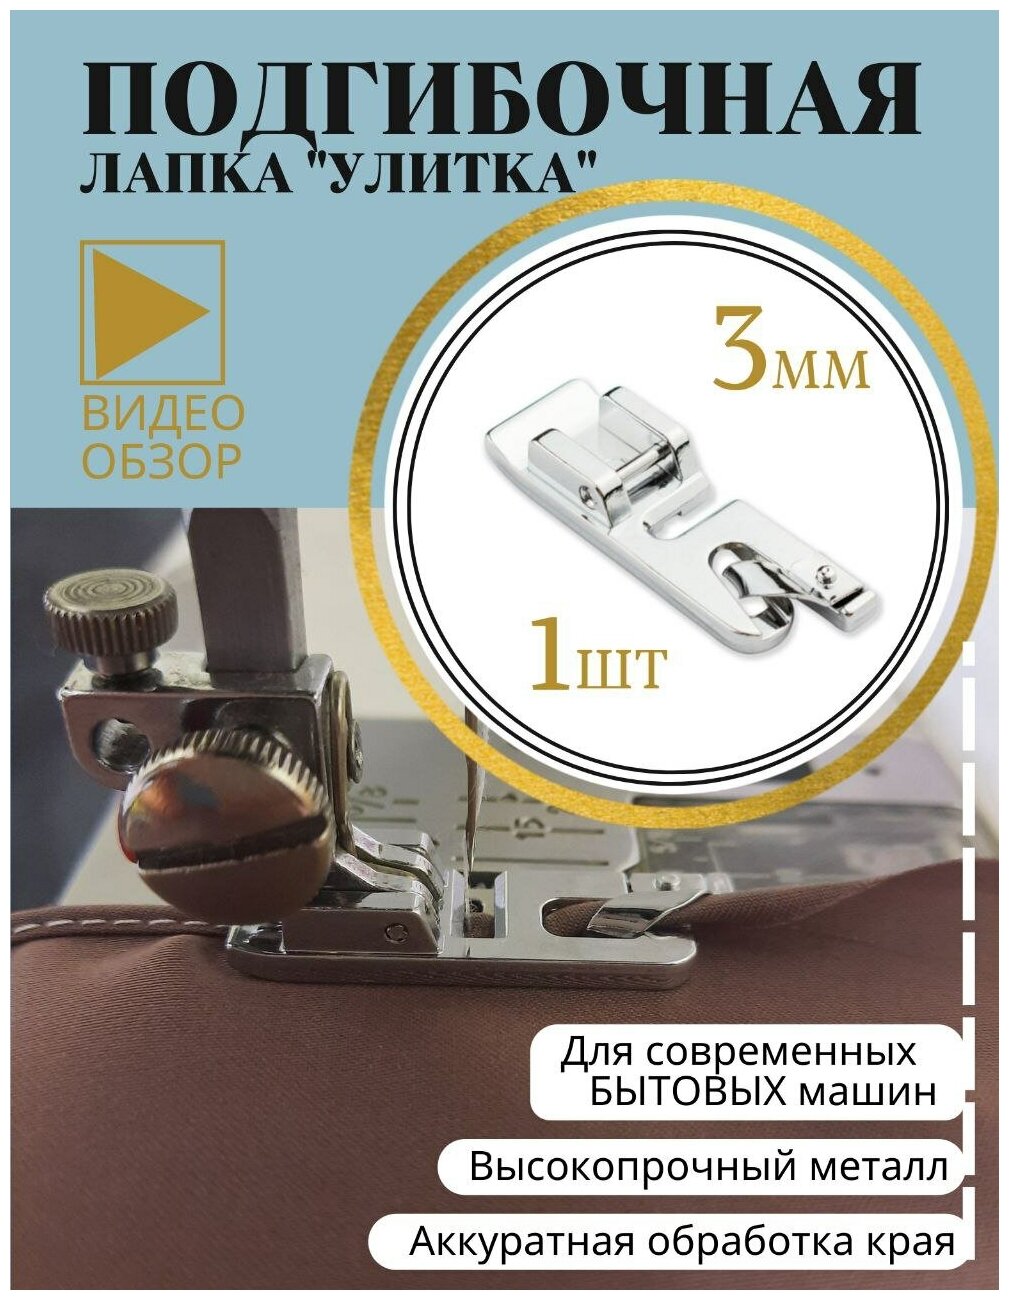 Лапка подрубочная улитка подгибочная 3 мм для бытовых швейных машин Janome Brother Singer JUKI